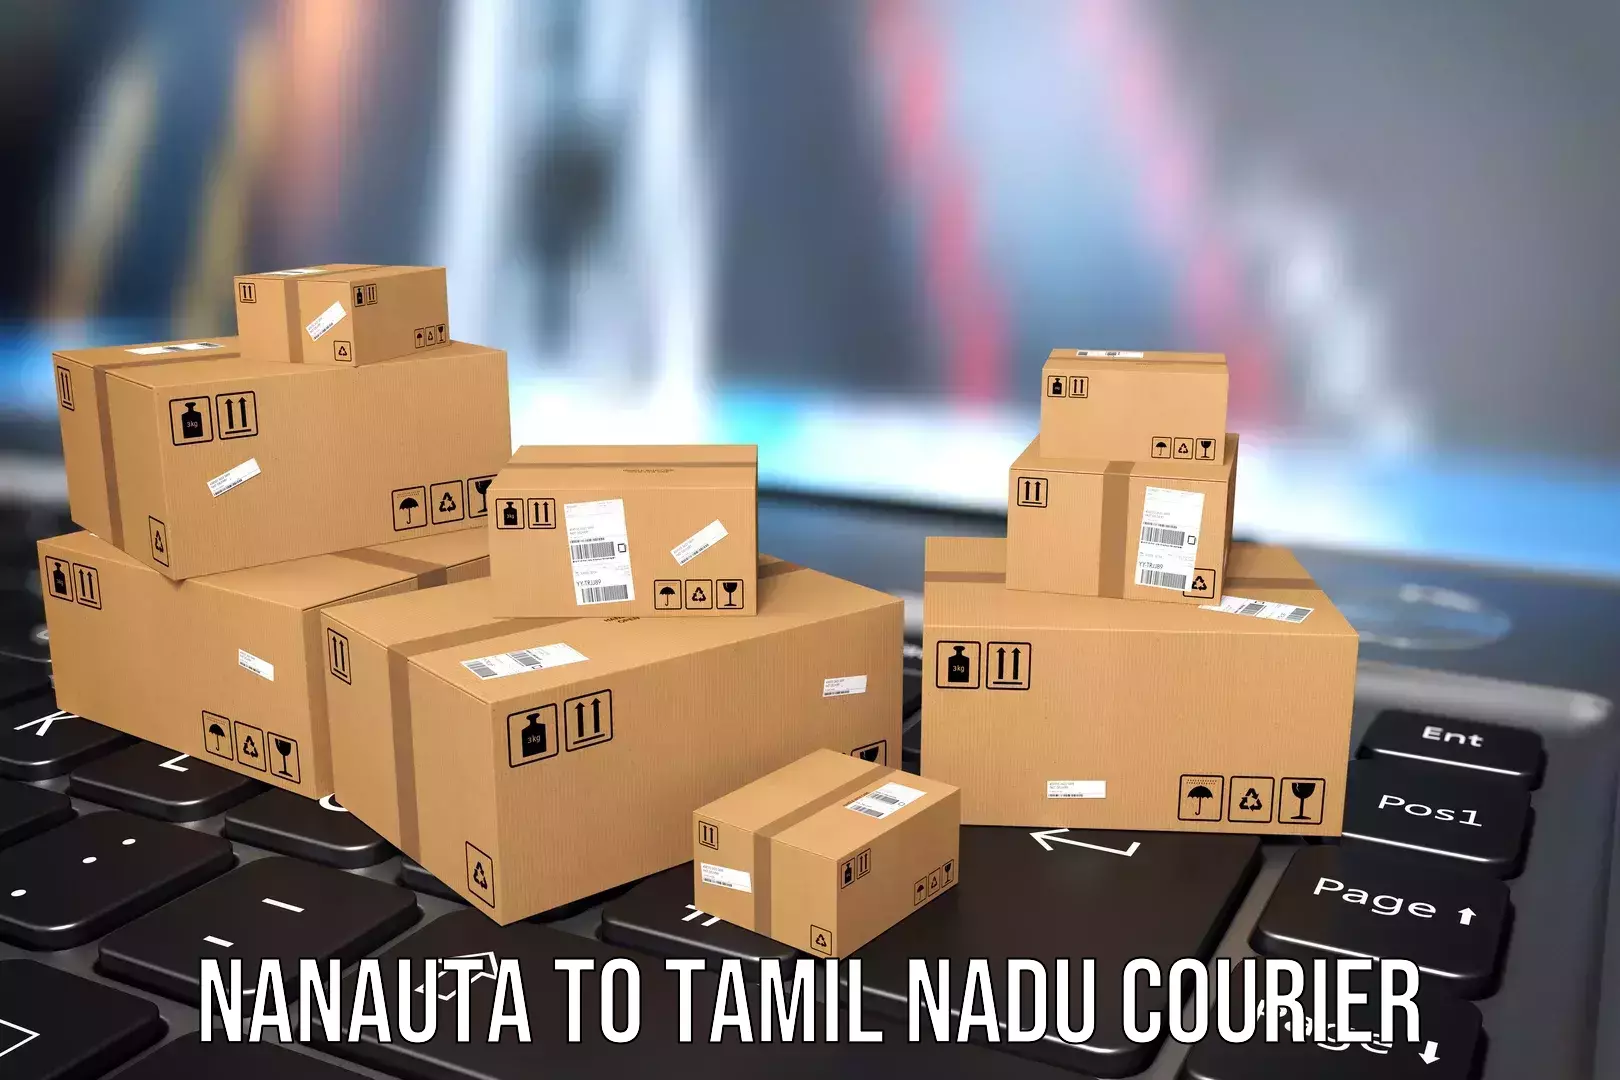 Flexible luggage courier service Nanauta to Anna University Chennai